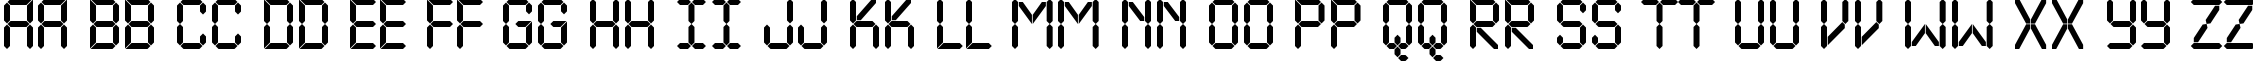 Пример написания английского алфавита шрифтом a_LCDNova